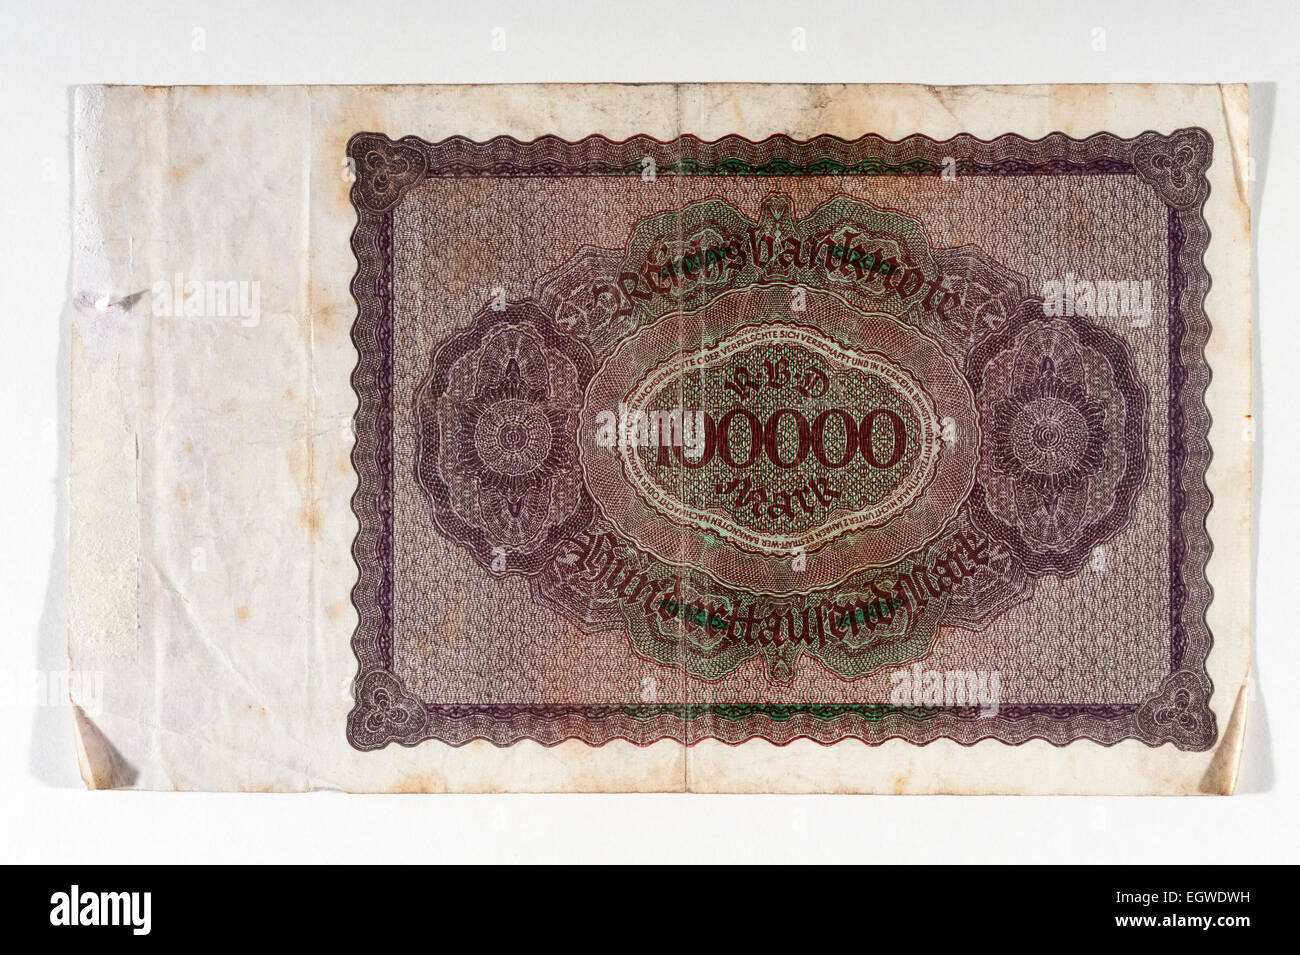 Deutschland - das Gegenteil einer hunderttausend Mark Note, herausgegeben von der Weimarer Republik am 1. Februar 1923 zu Beginn einer Periode der wilden Hyperinflation nach dem ersten Weltkrieg Stockfoto